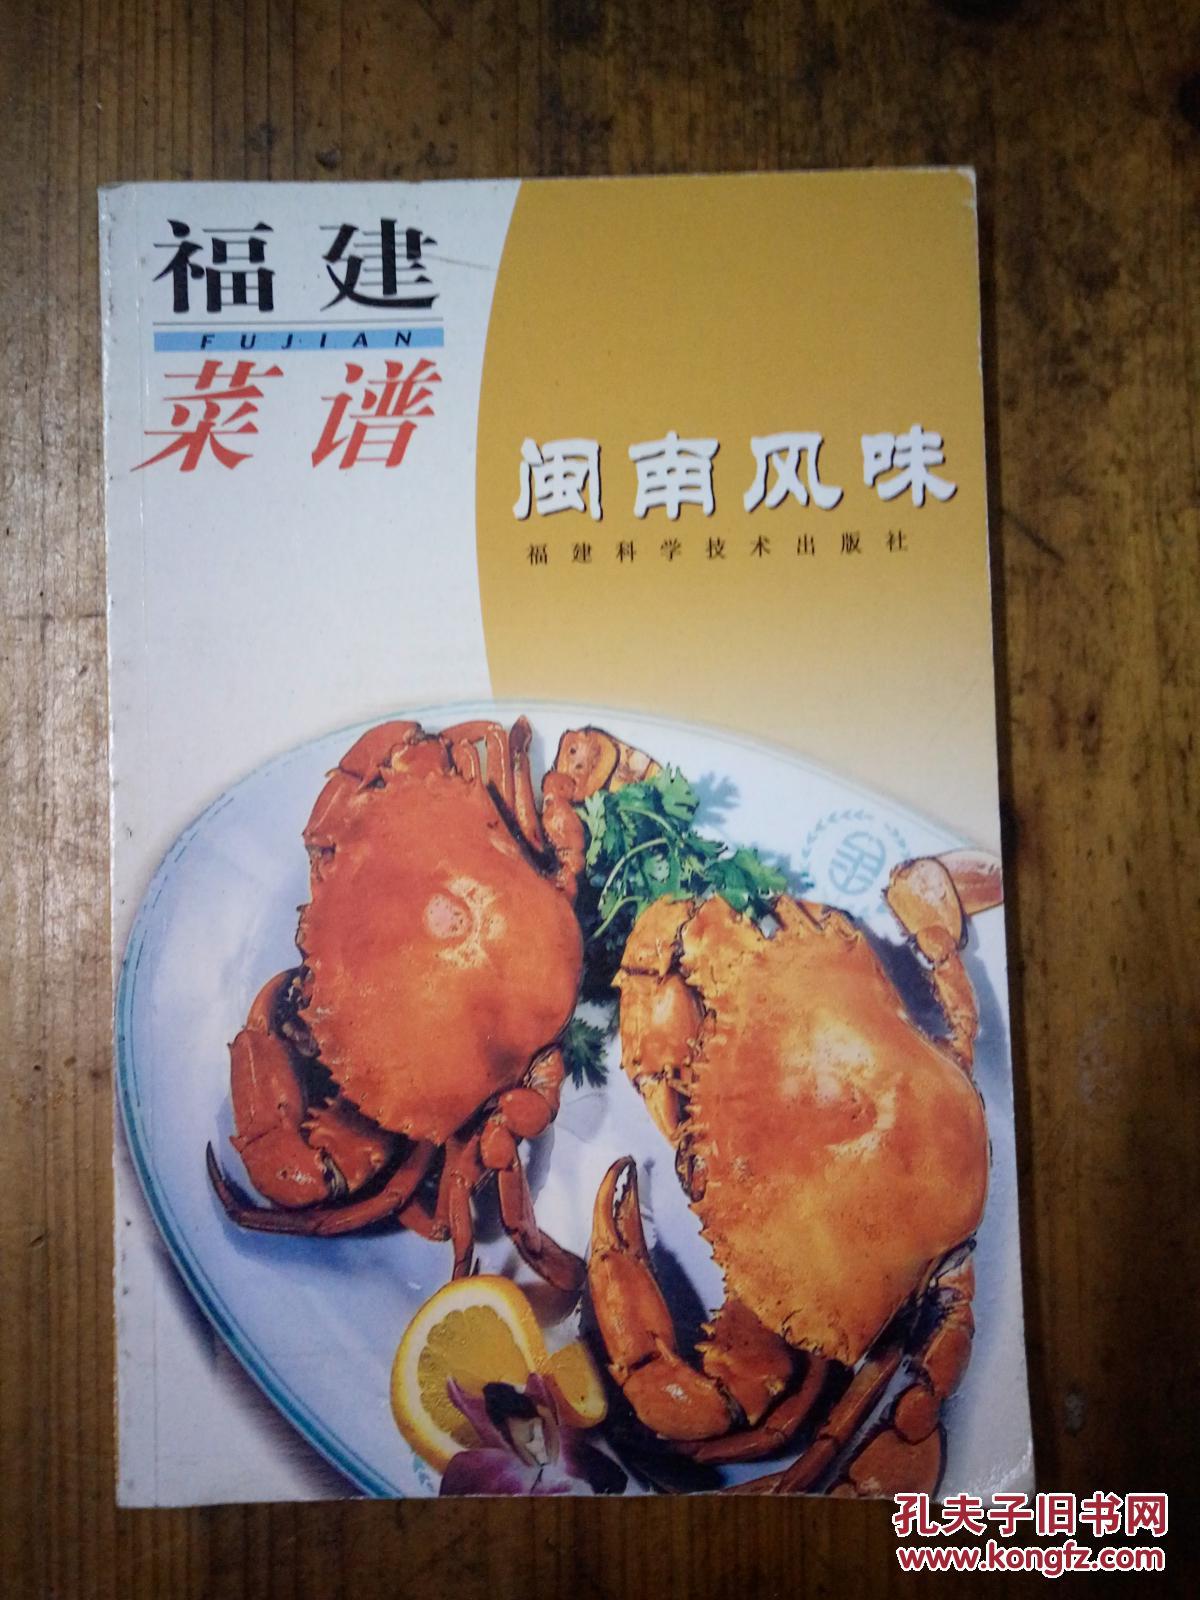 福建菜谱:闽南风味